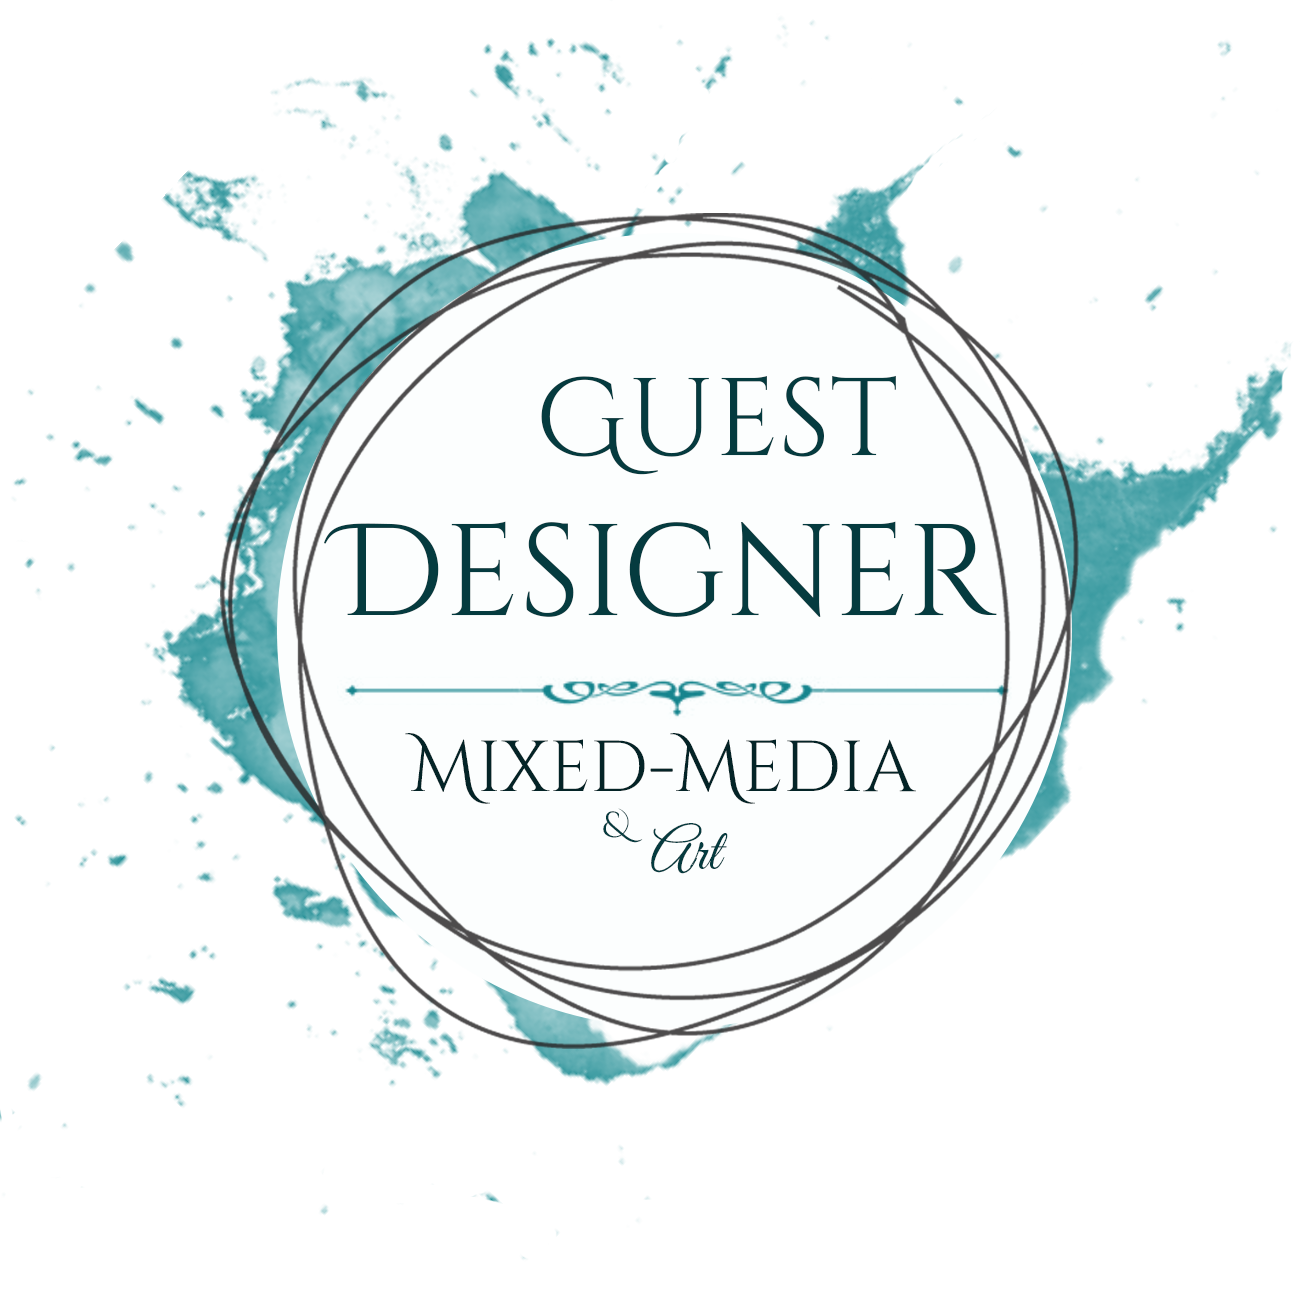 Guest Designer Mixed-Media & Arts